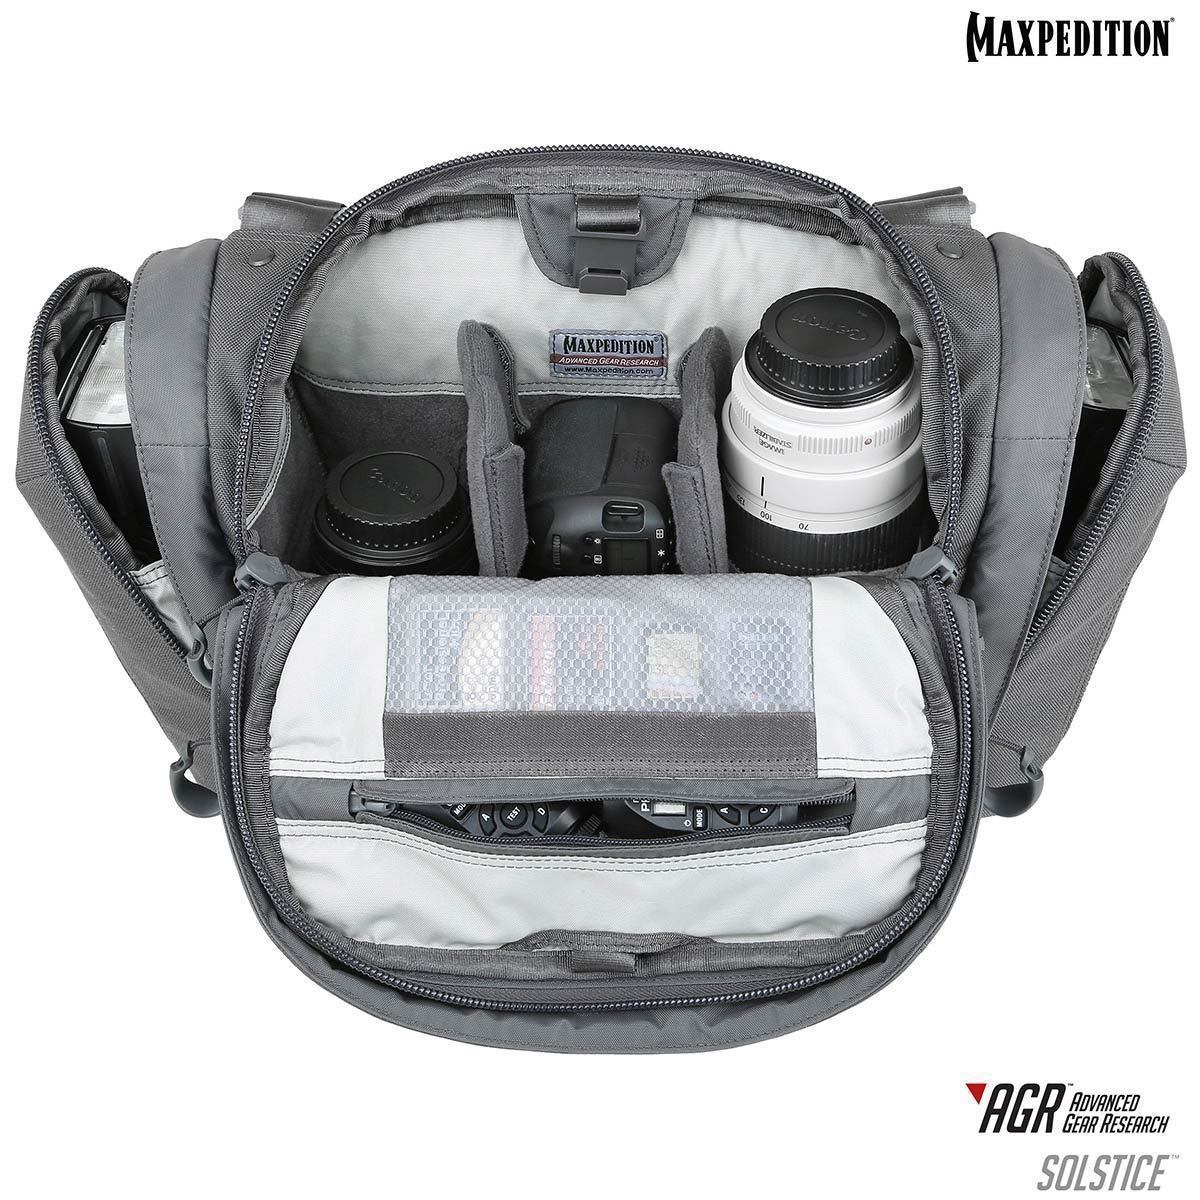 Maxpedition Solstice CCW Camera Bag 13.5L Bags, Packs and Cases Maxpedition Tactical Gear Supplier Tactical Distributors Australia